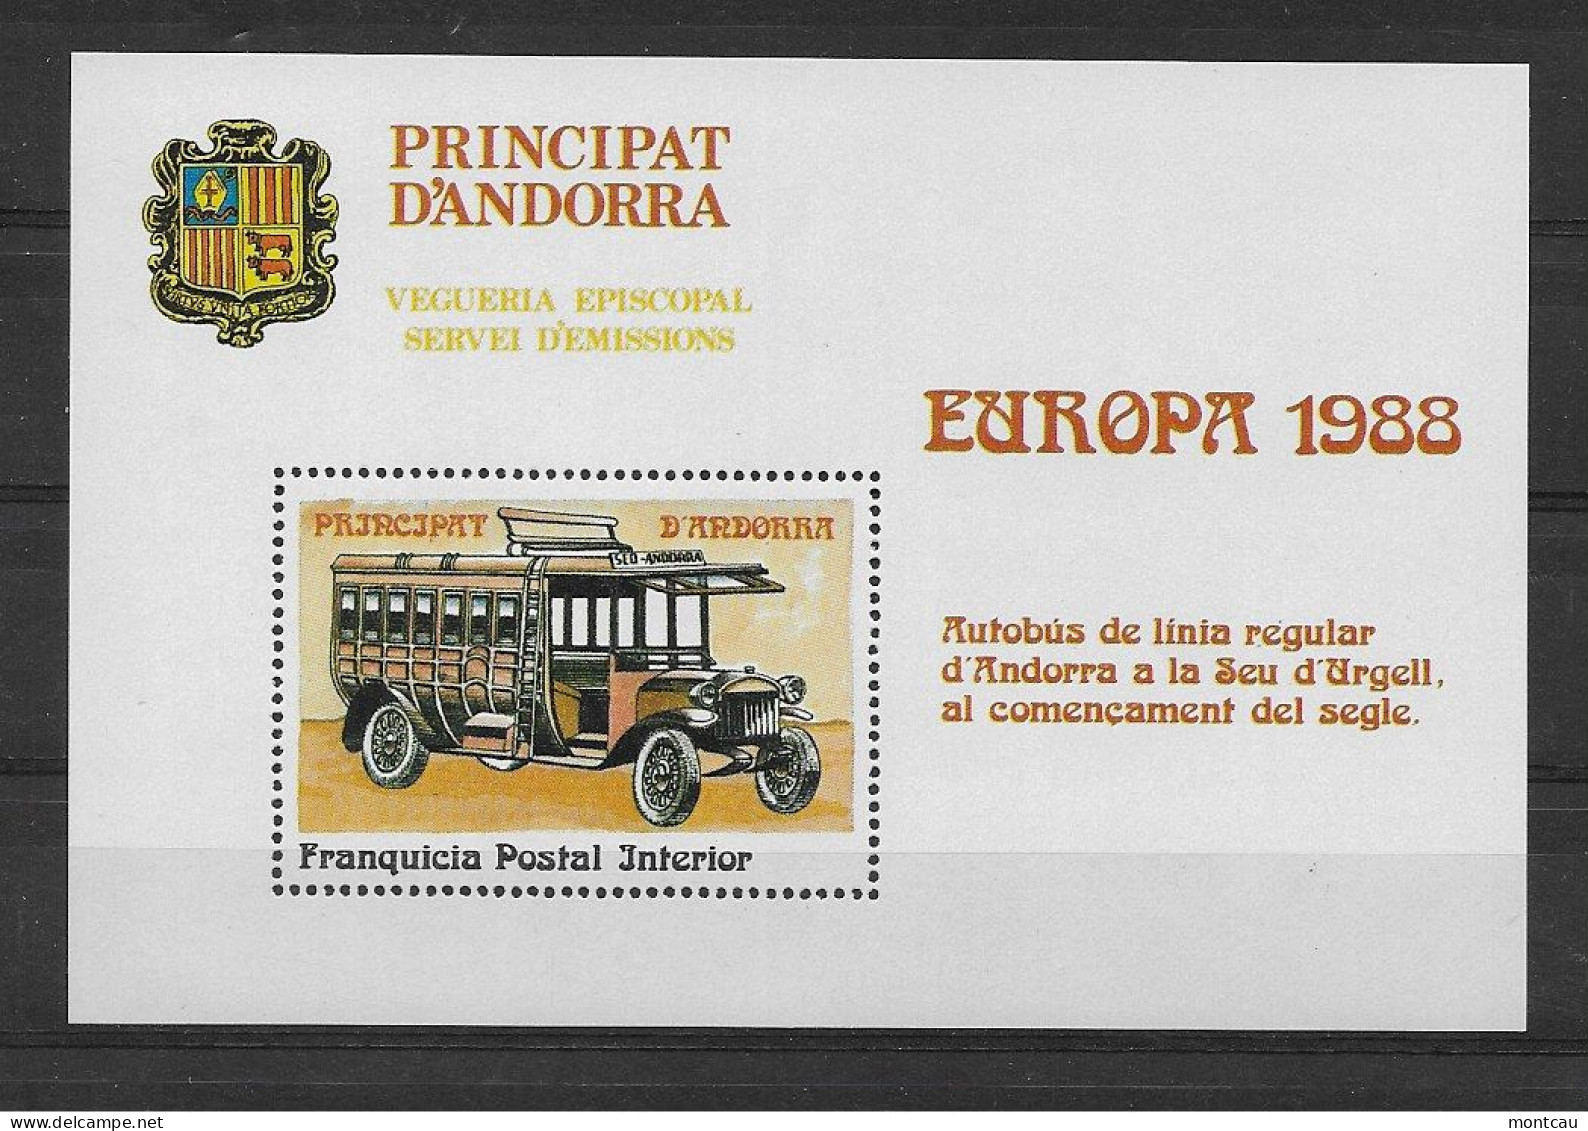 Andorra - 1988 - Vegueria Episcopal Europa - Episcopal Viguerie